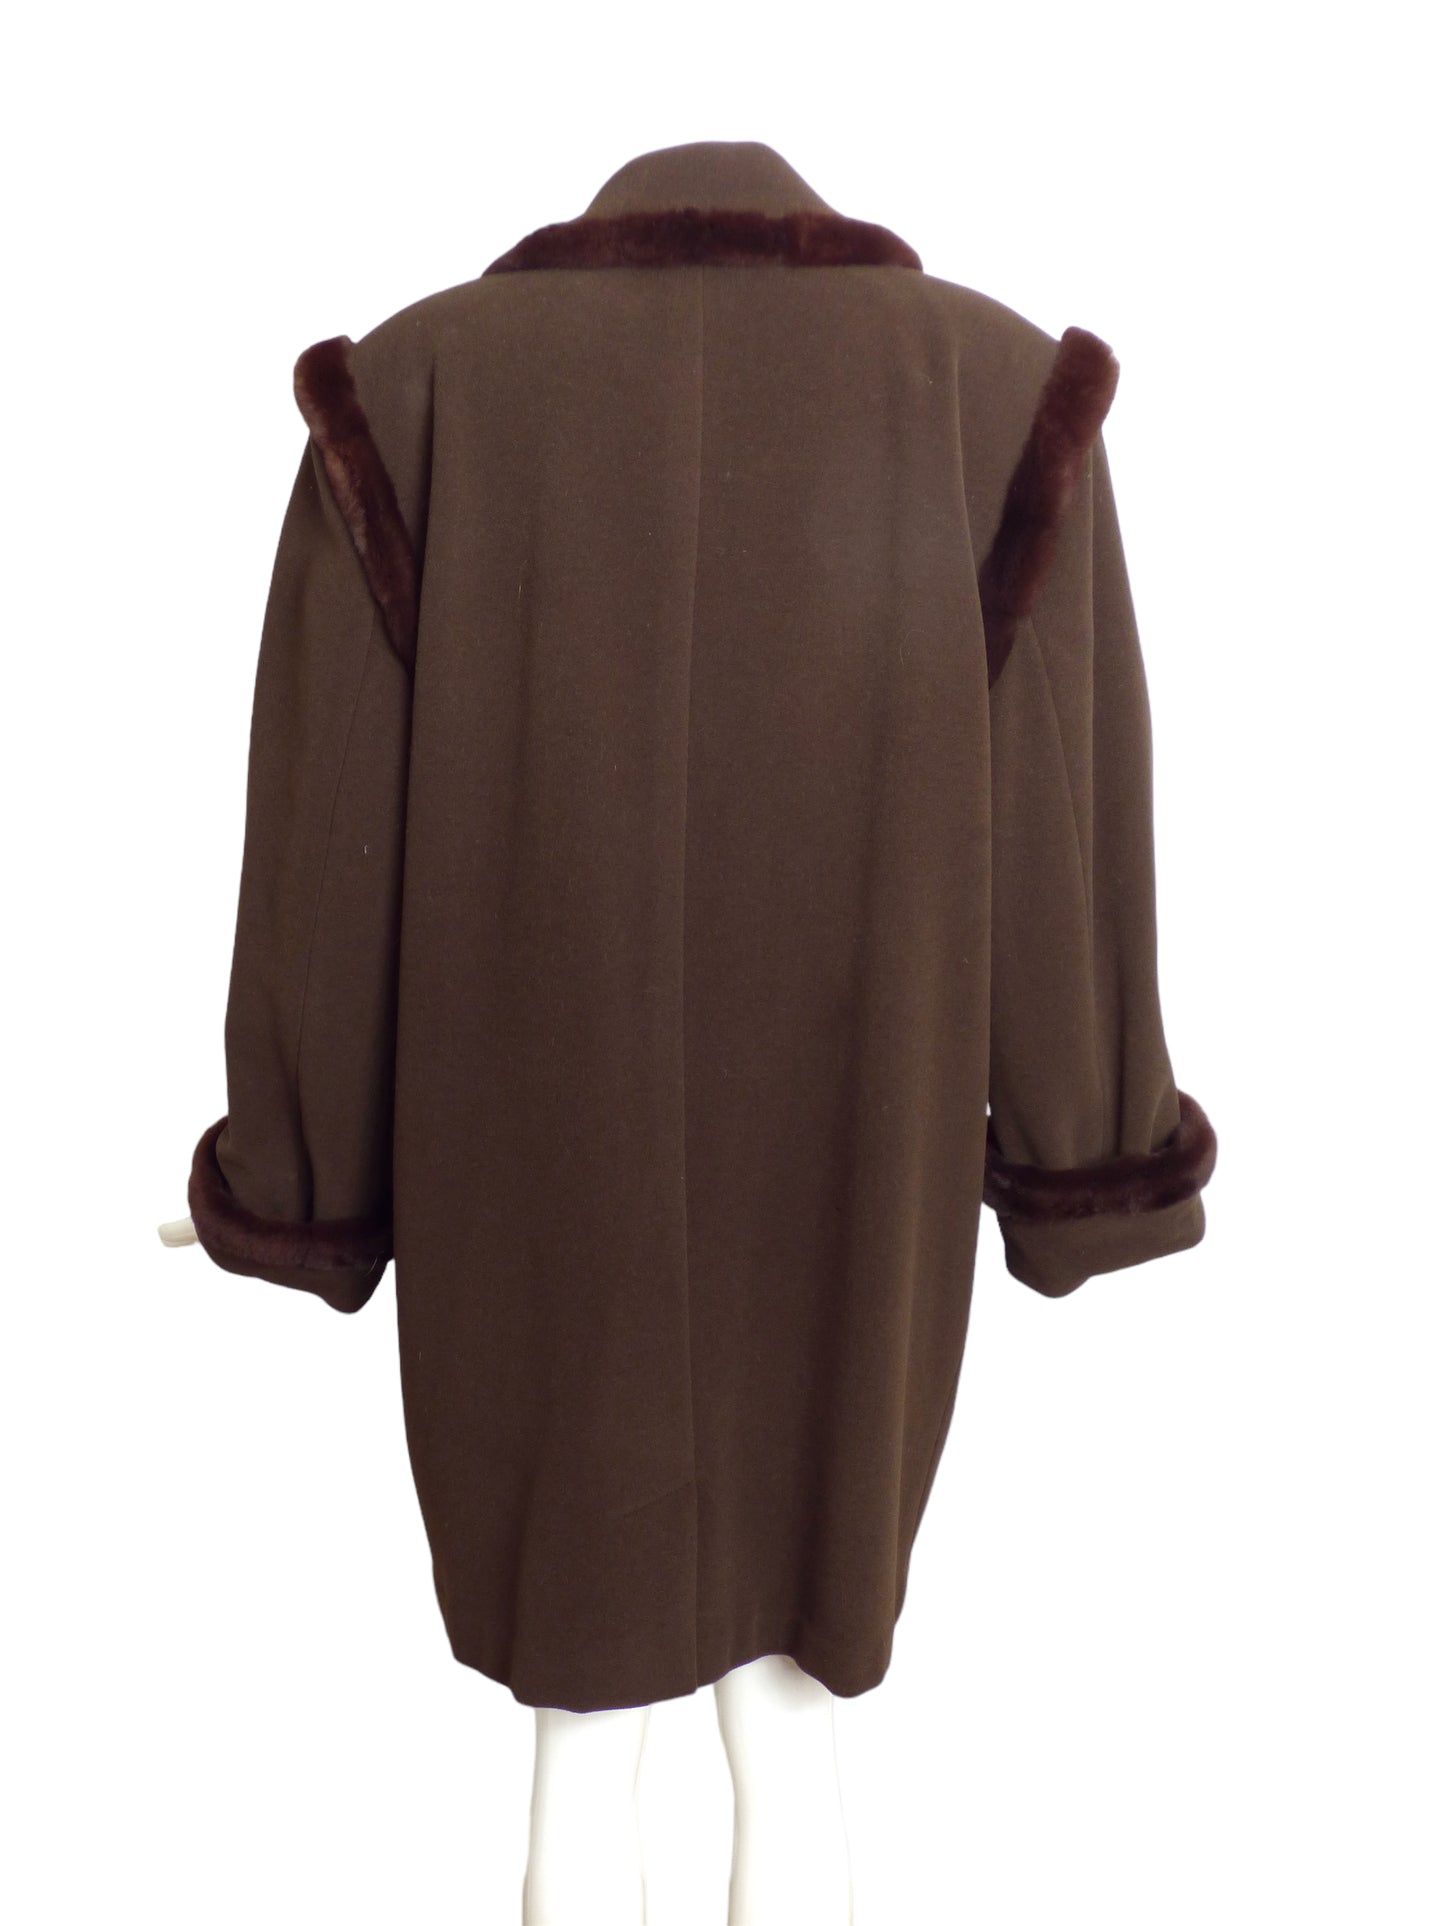 LOUIS FERAUD- AS IS 1980s Brown Wool & Fur Trim Coat, Size 12